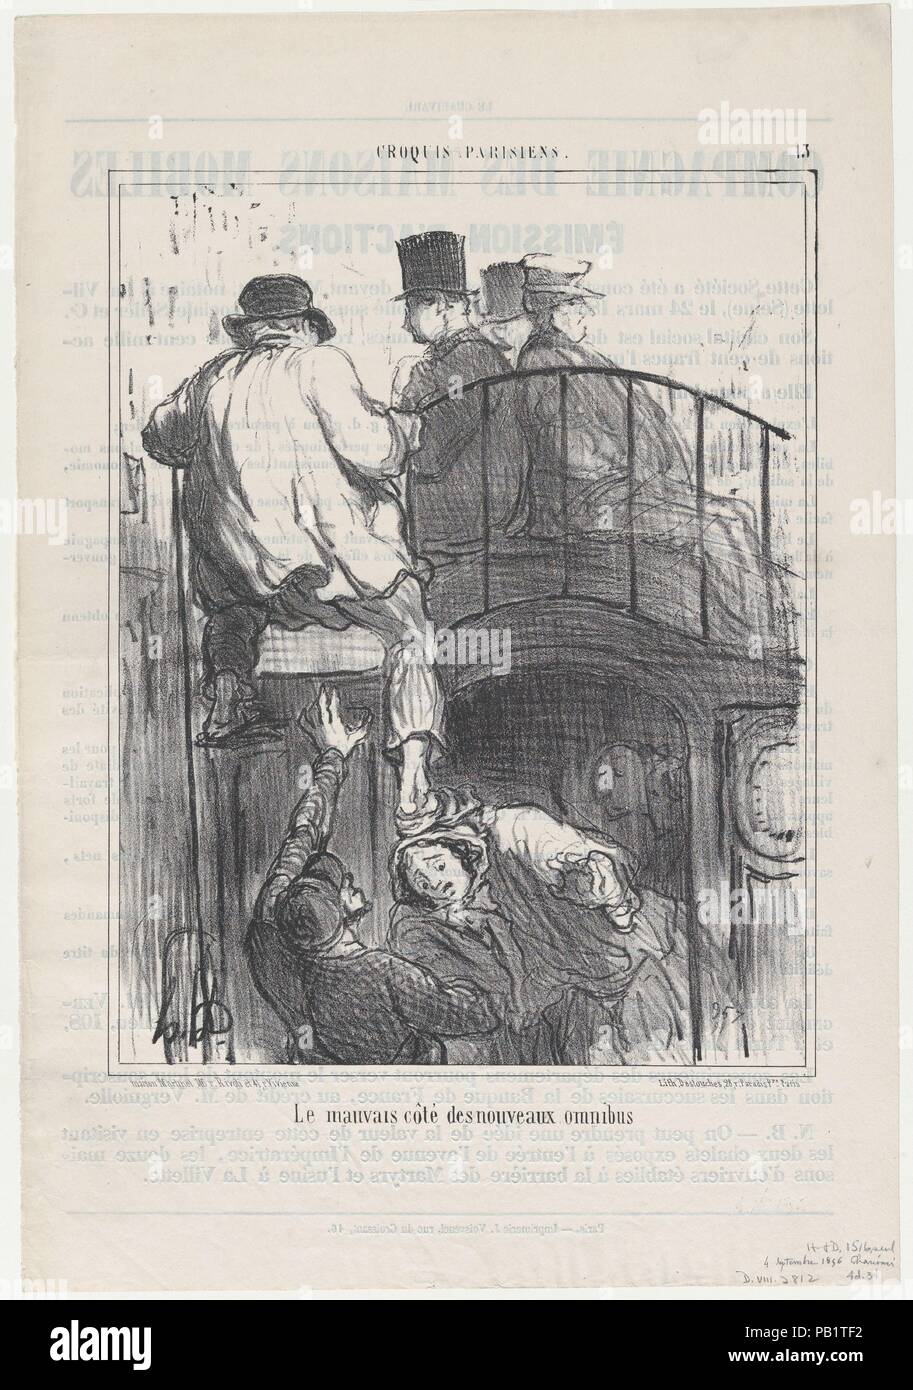 Le mauvais côté de nouveaux Omnibus, von Croquis Parisiens, in Le Charivari, 4. September 1856 veröffentlicht. Artist: Honoré Daumier (Französisch, Marseille 1808-1879 Valmondois). Maße: Blatt: 14 5/8 x 10 1/16-in. (37,2 × 25,6 cm) Bild: 10 1/8 x 7 7/8 in. (25,7 × 20 cm). Drucker: destouches (Paris). Herausgeber: Aaron Martinet (Französisch, 1762-1841). Serie/Portfolio: Croquis Parisiens. Datum: September 4, 1856. Museum: Metropolitan Museum of Art, New York, USA. Stockfoto